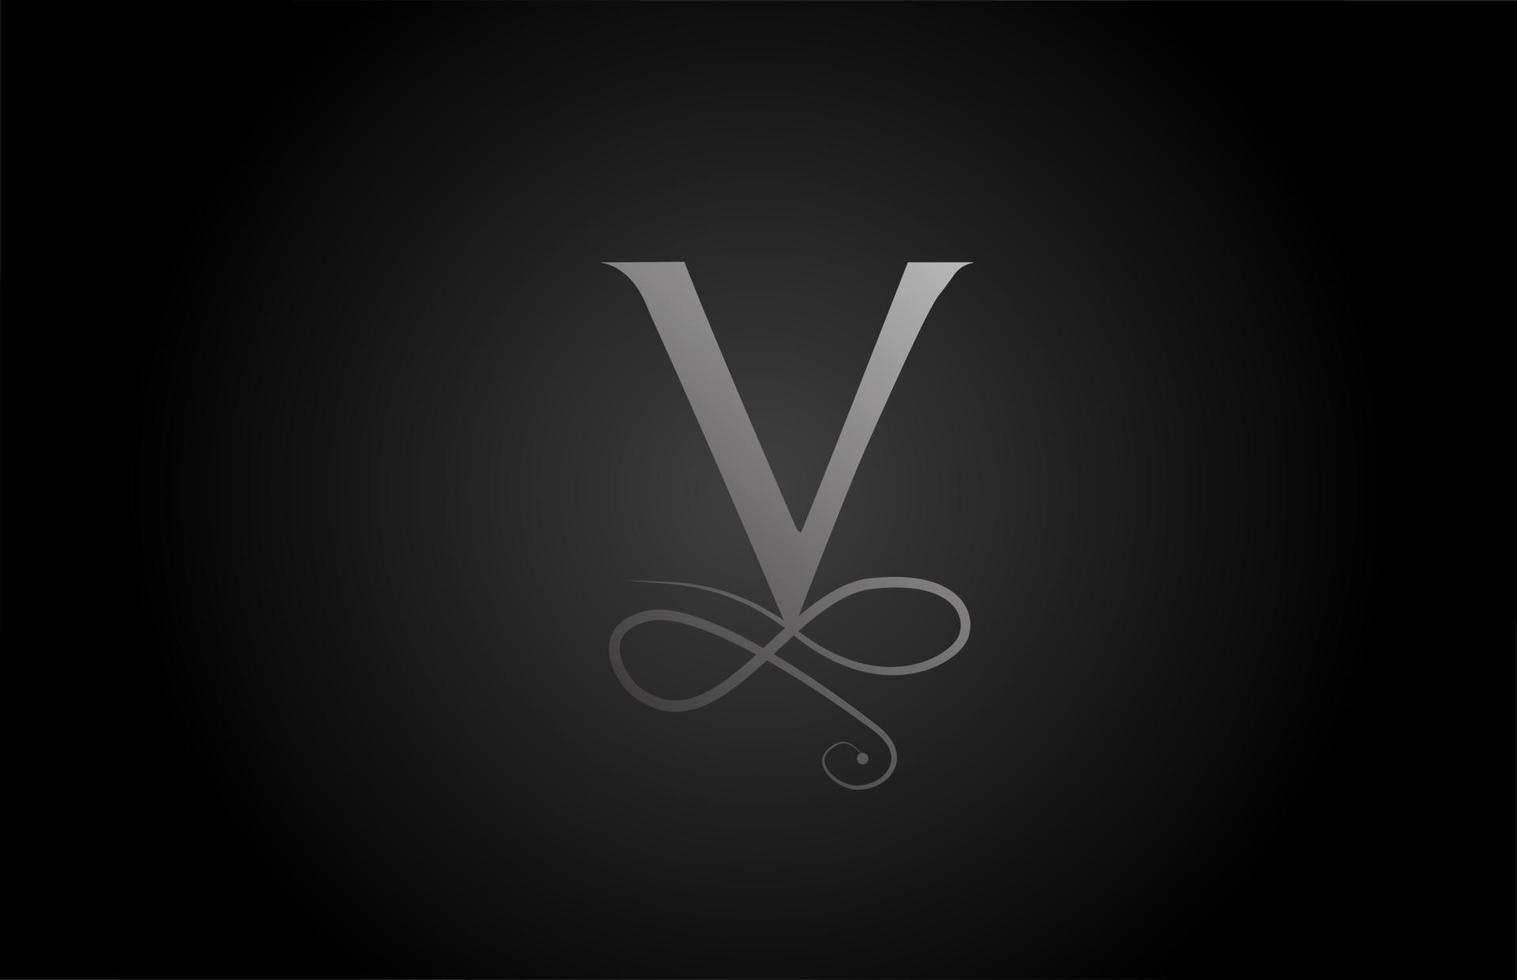 v ícone do logotipo de letra do alfabeto de ornamento de monograma elegante preto e branco para luxo. negócios e design corporativo para produtos empresariais vetor